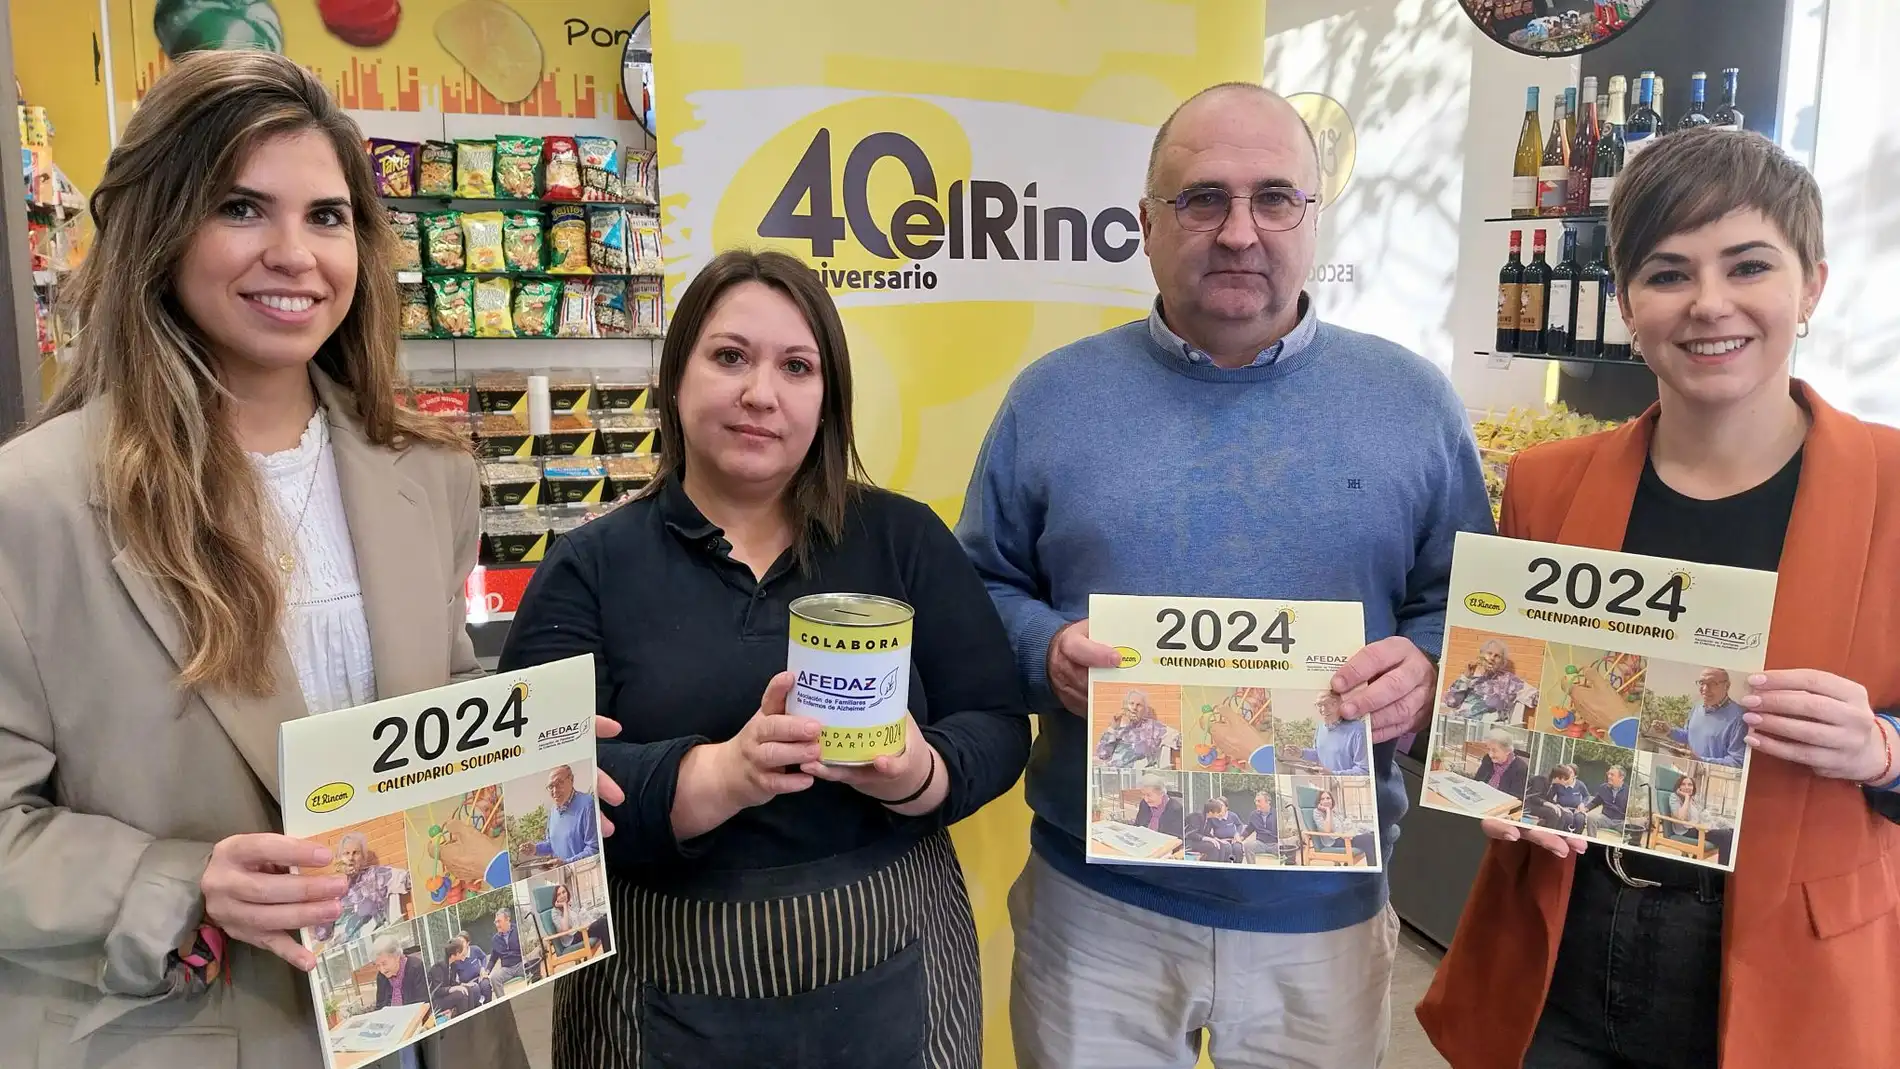 El Rincón lanza su calendario solidario 2024 con Afedaz